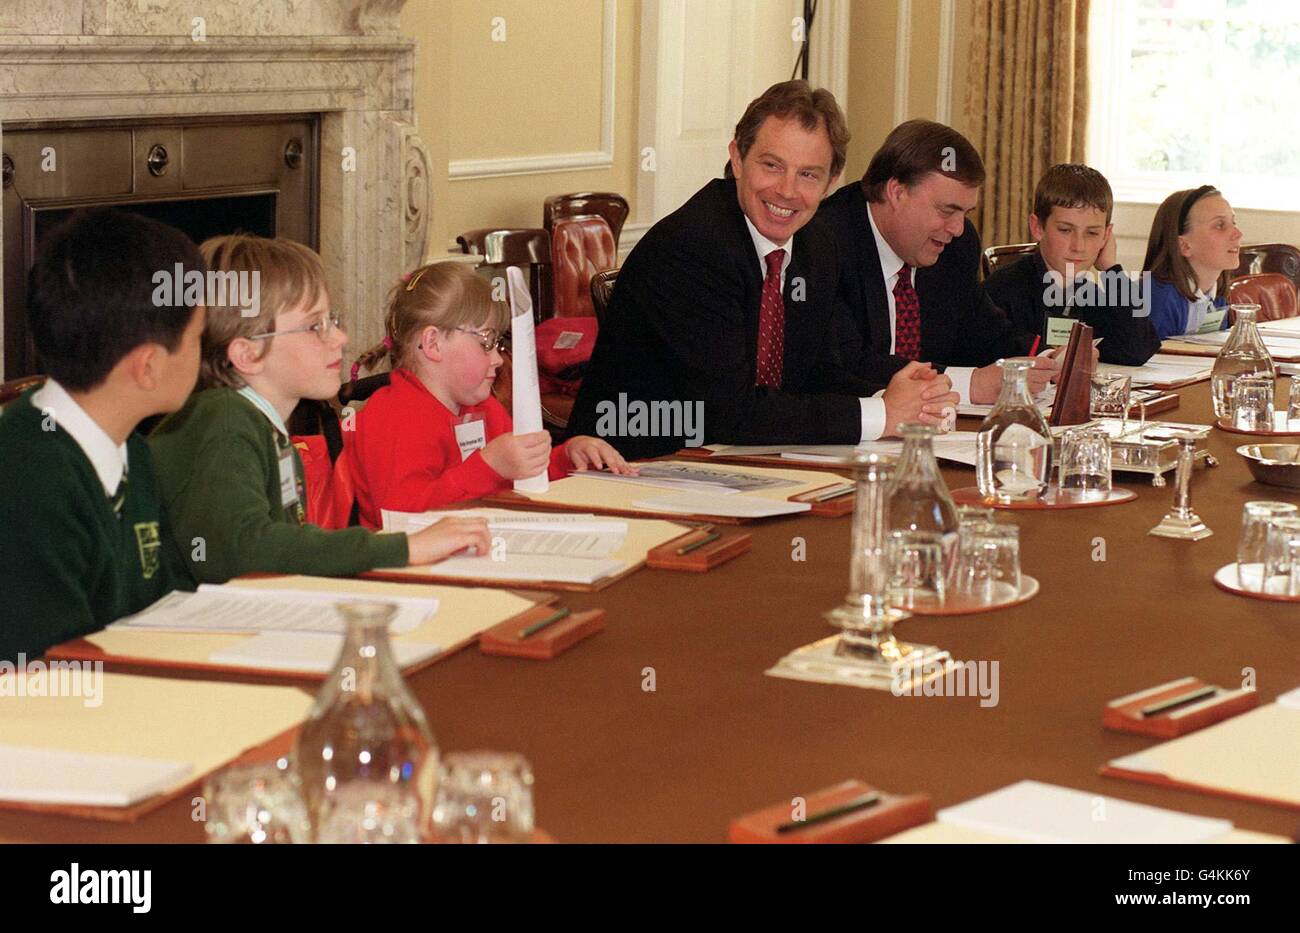 Le premier ministre britannique Tony Blair (à gauche) et le vice-premier ministre John Prescott discutent avec des enfants dans la salle du Cabinet du 10 Downing Street, à Londres, à l'occasion de la Journée du Parlement des enfants. Banque D'Images